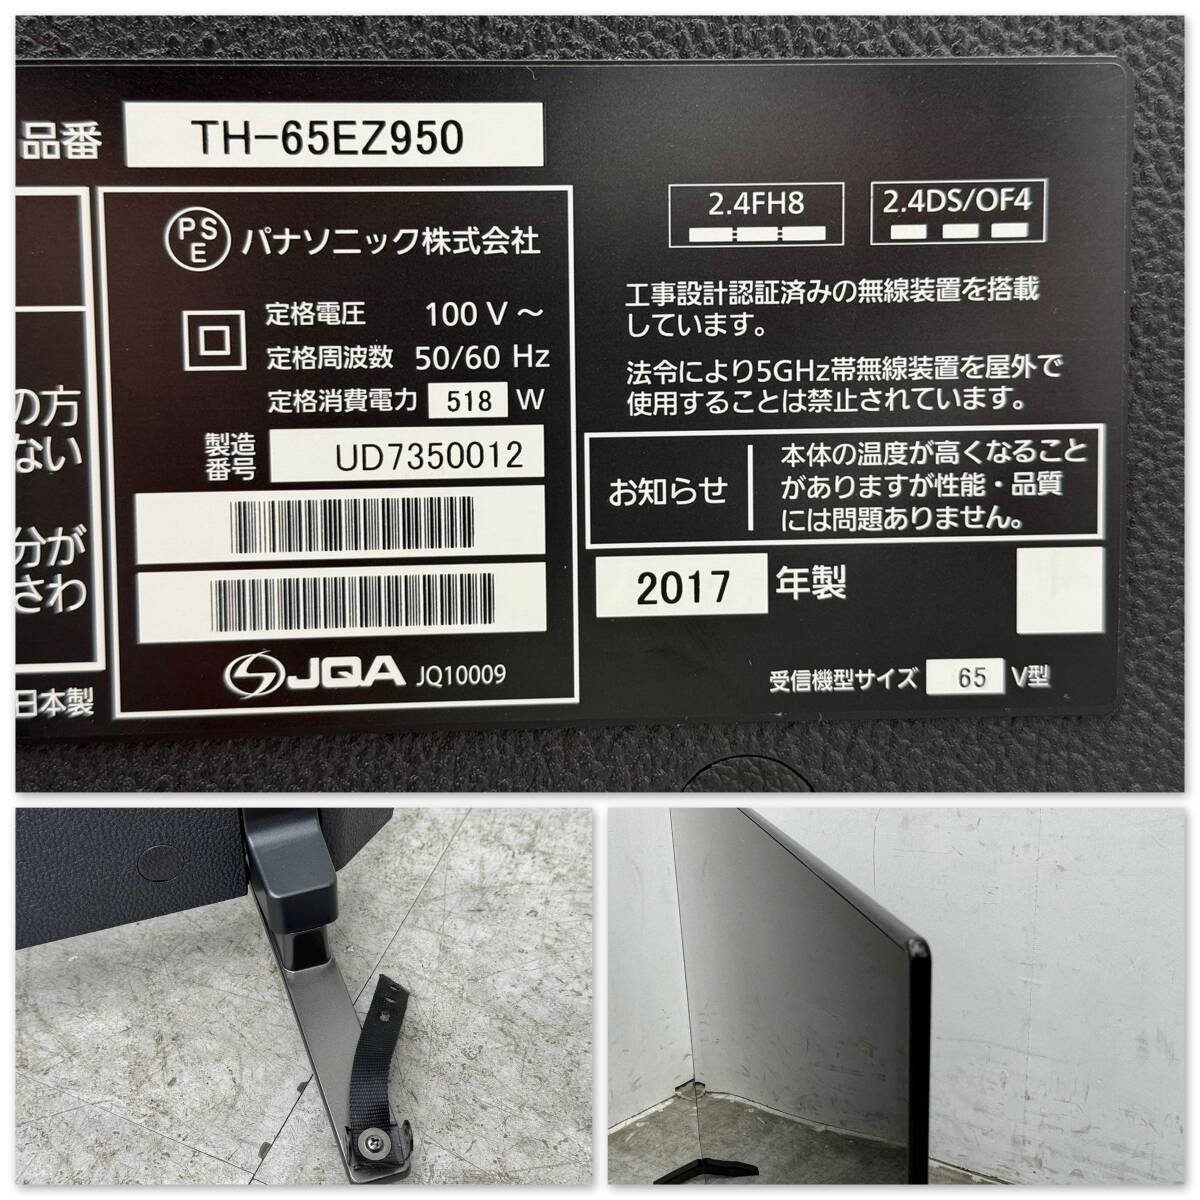 T770* выставленный товар *Panasonic Panasonic иметь машина EL телевизор 65 type 65 дюймовый TH-65EZ950 VIERA viera 2017 год производства самовывоз 